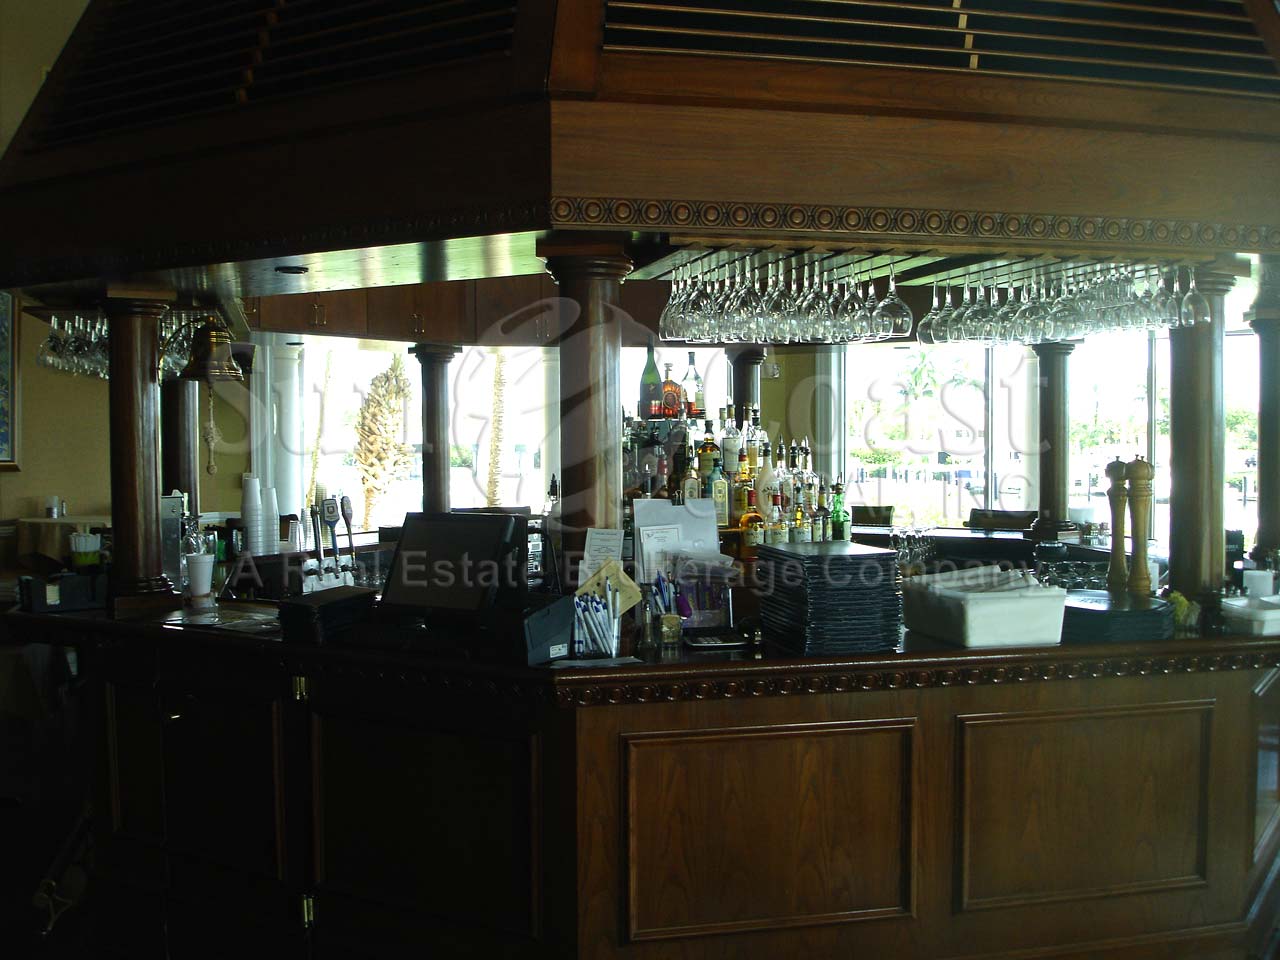 PELICAN ISLE Yacht Club Bar